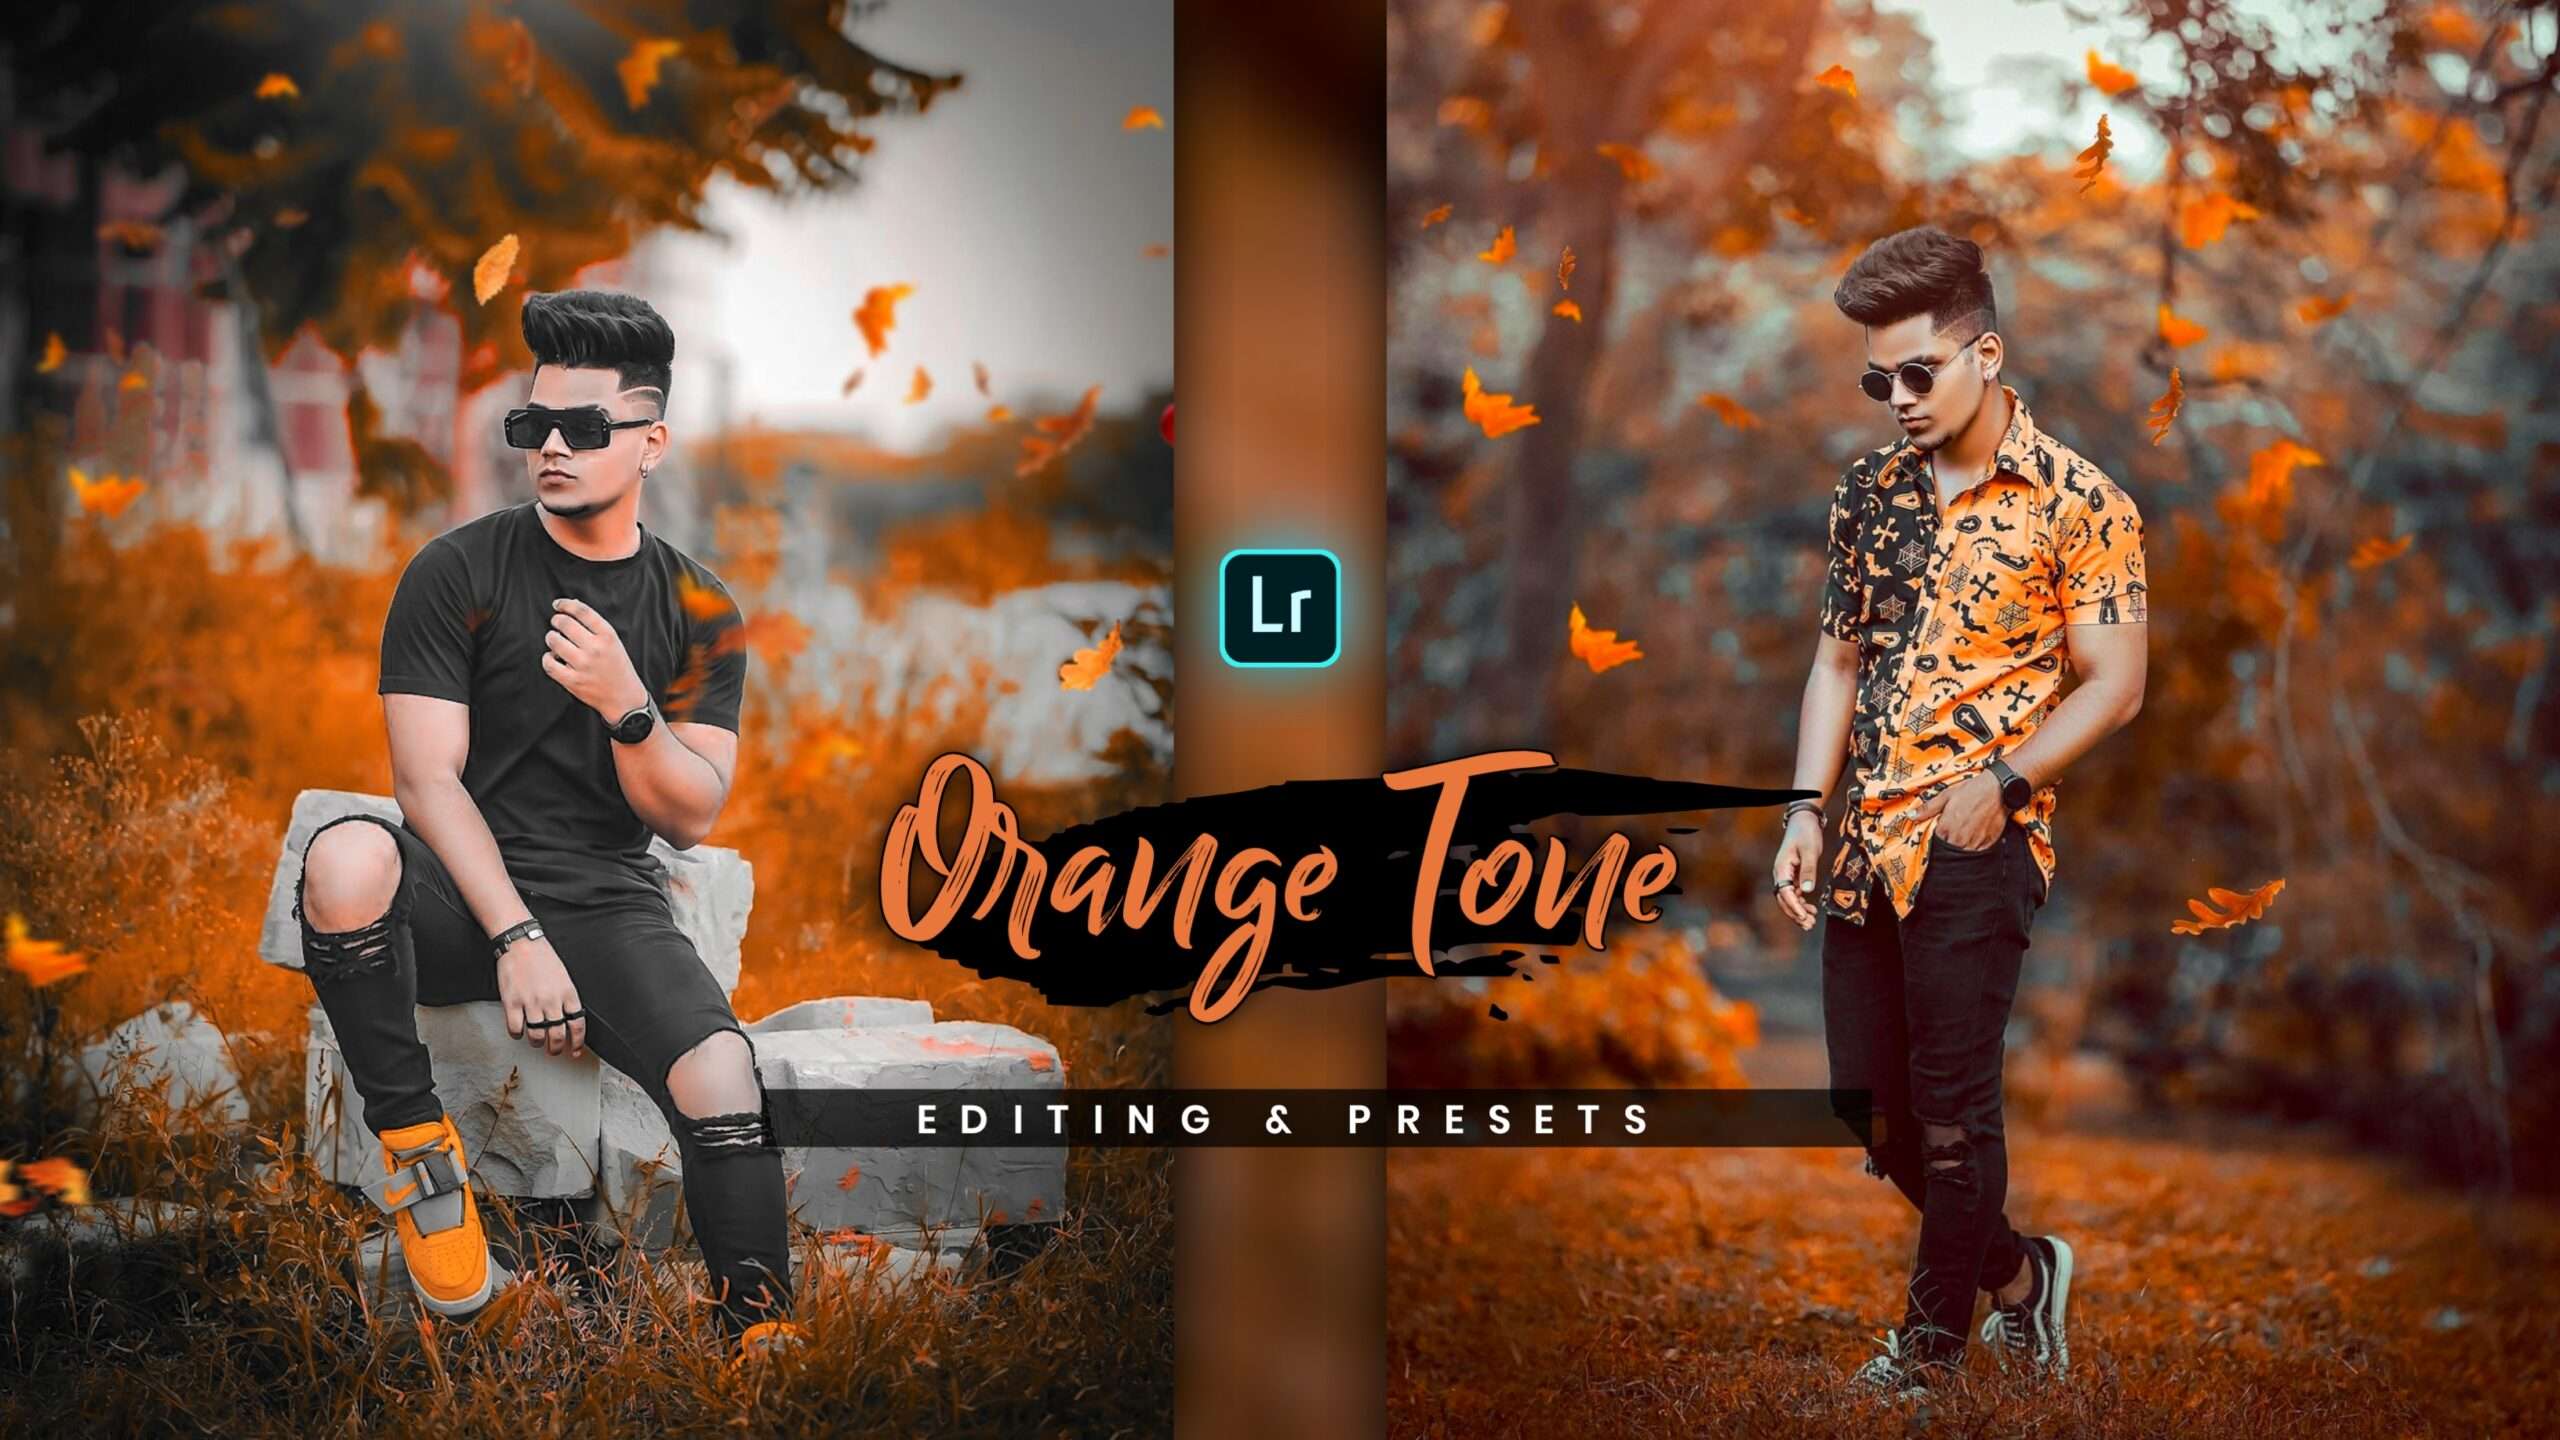 orange tone lightroom mobile presets free download